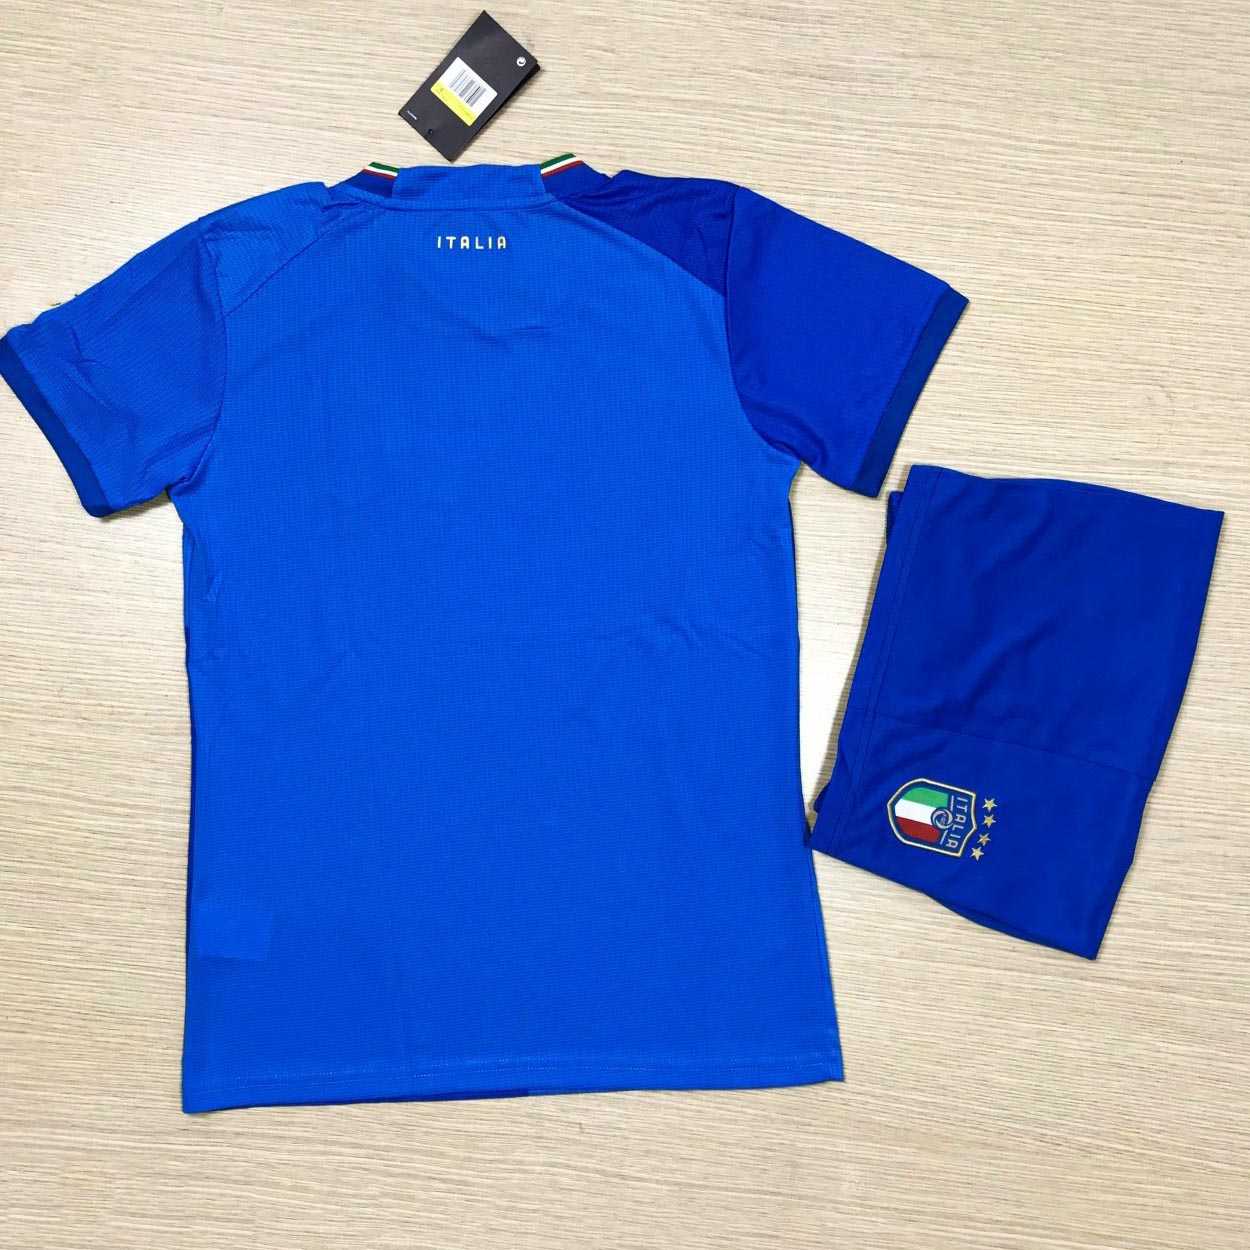 Bộ quần áo đá bóng đội tuyển ý italia blue xanh biển sân nhà mùa 22 23 năm 2022 2023 logo thêu